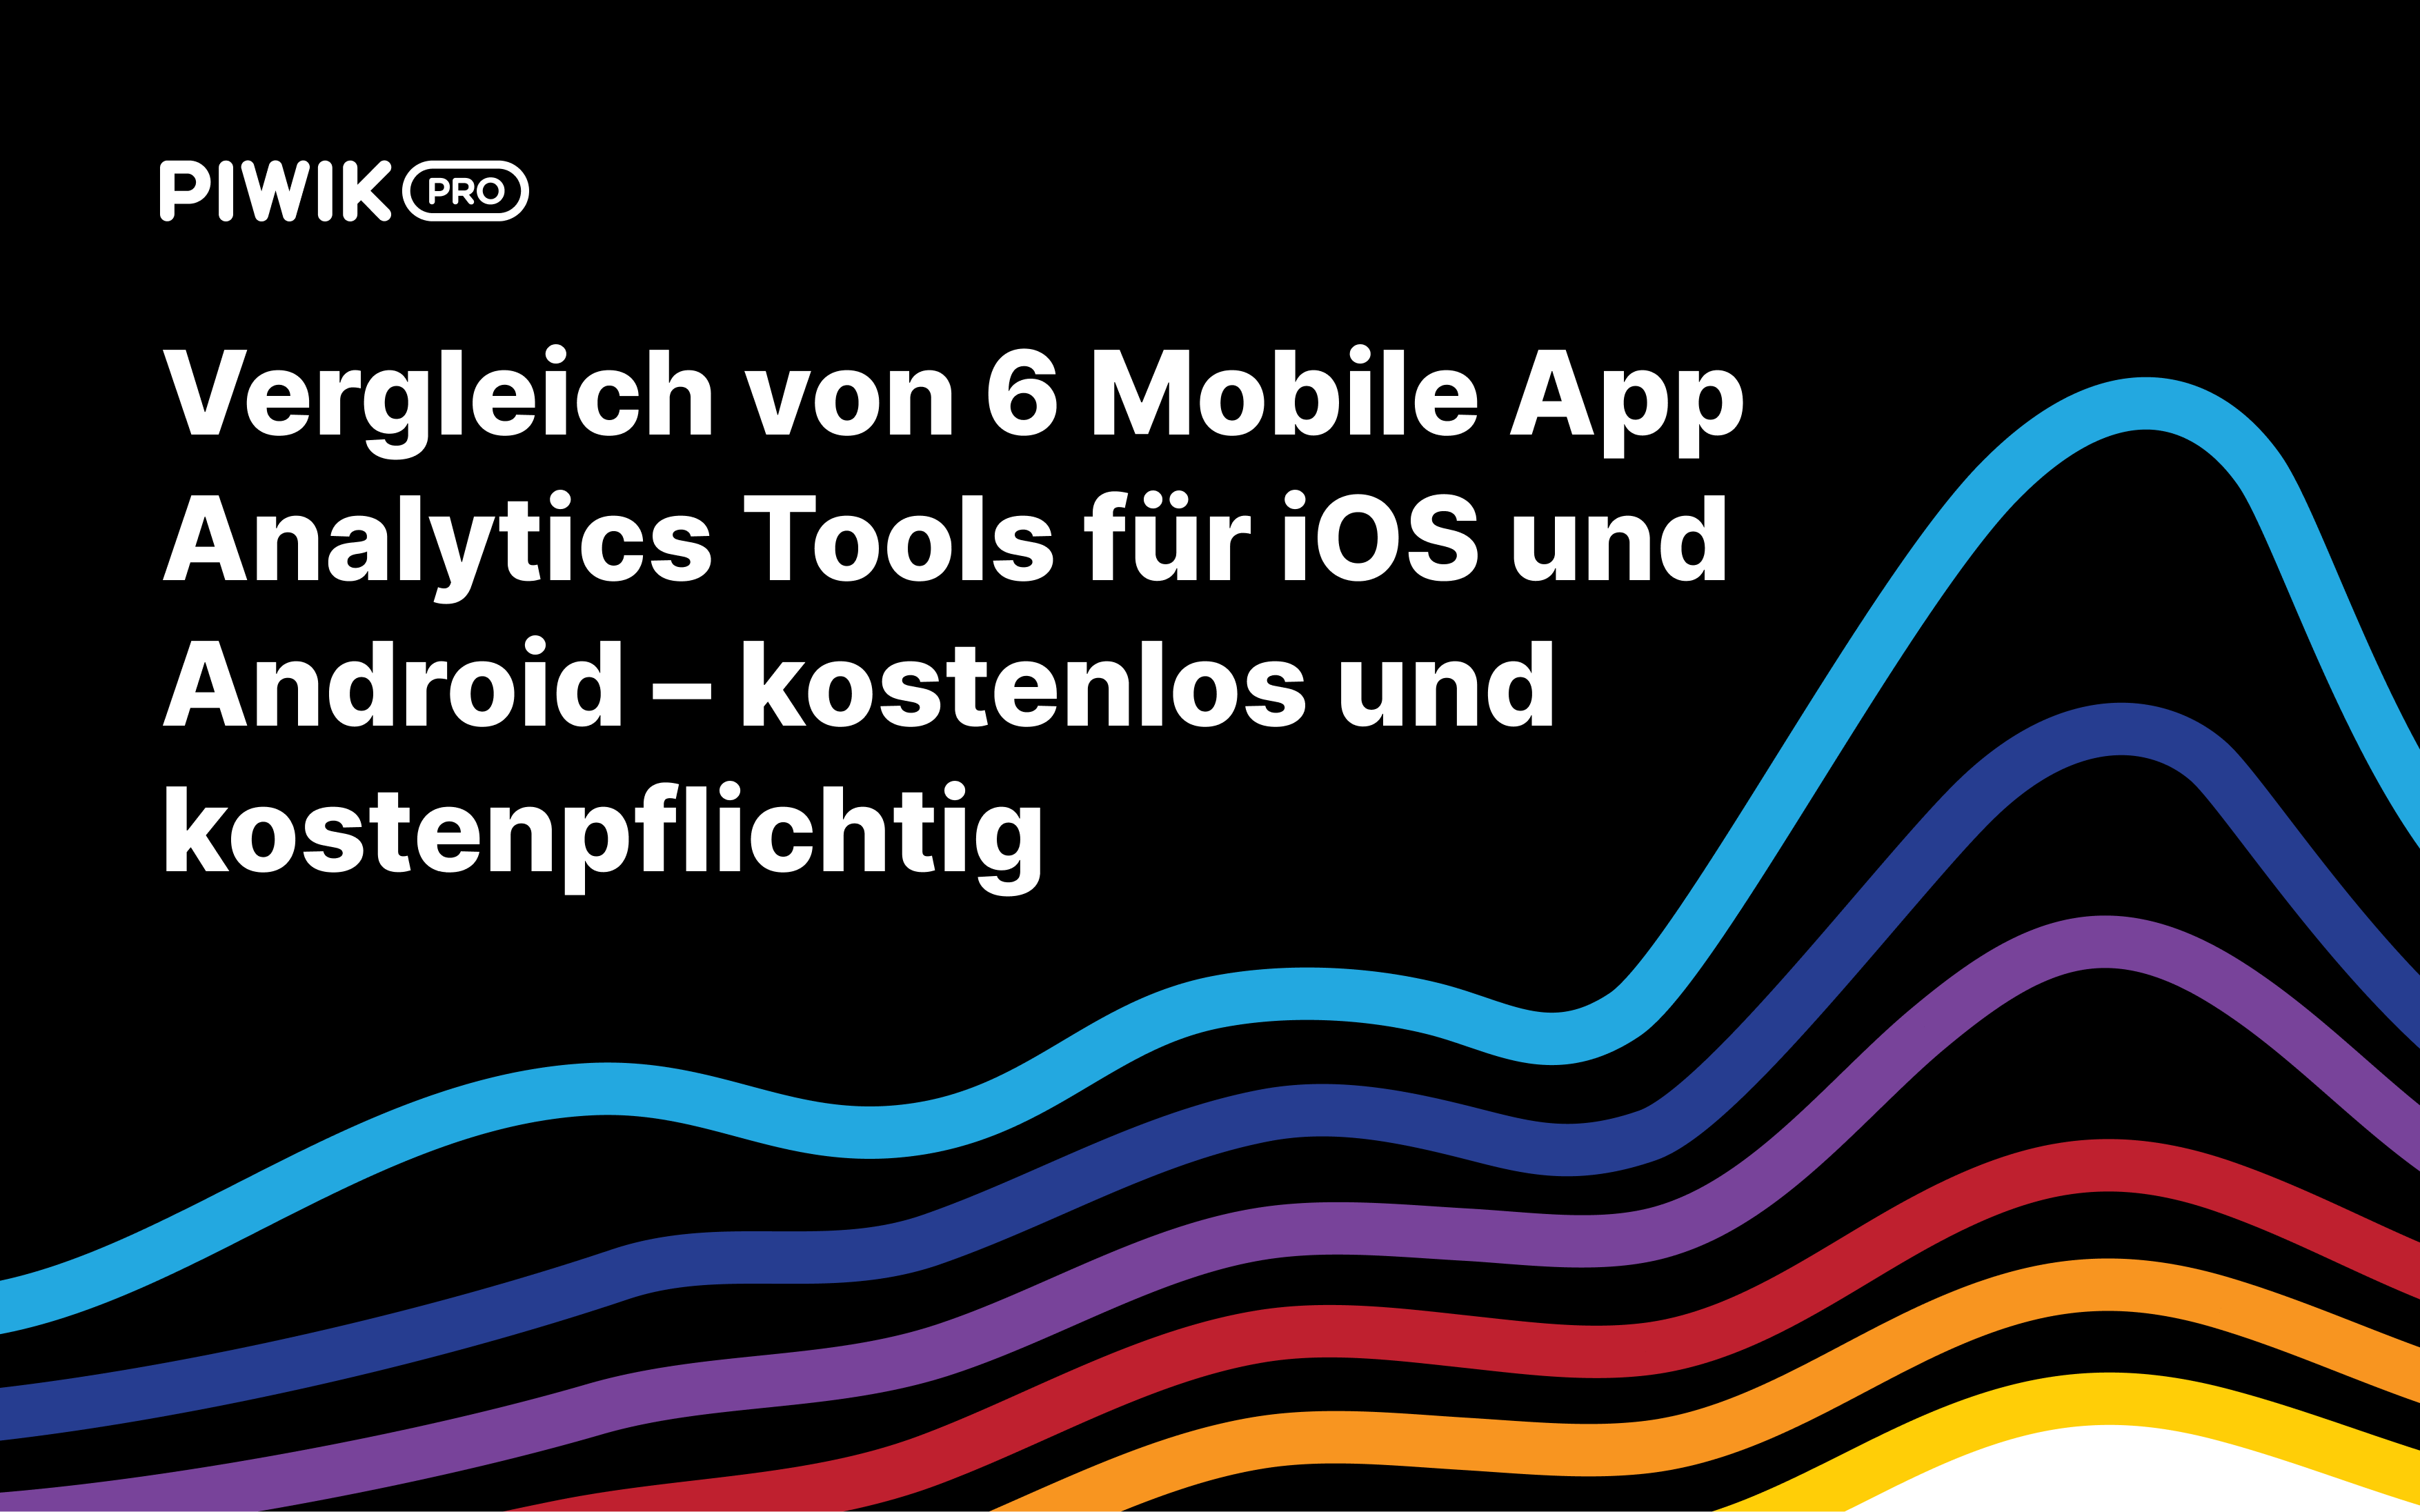 Vergleich von 6 kostenlosen und kostenpflichtigen Mobile App Analytics Plattformen für Android und iOS